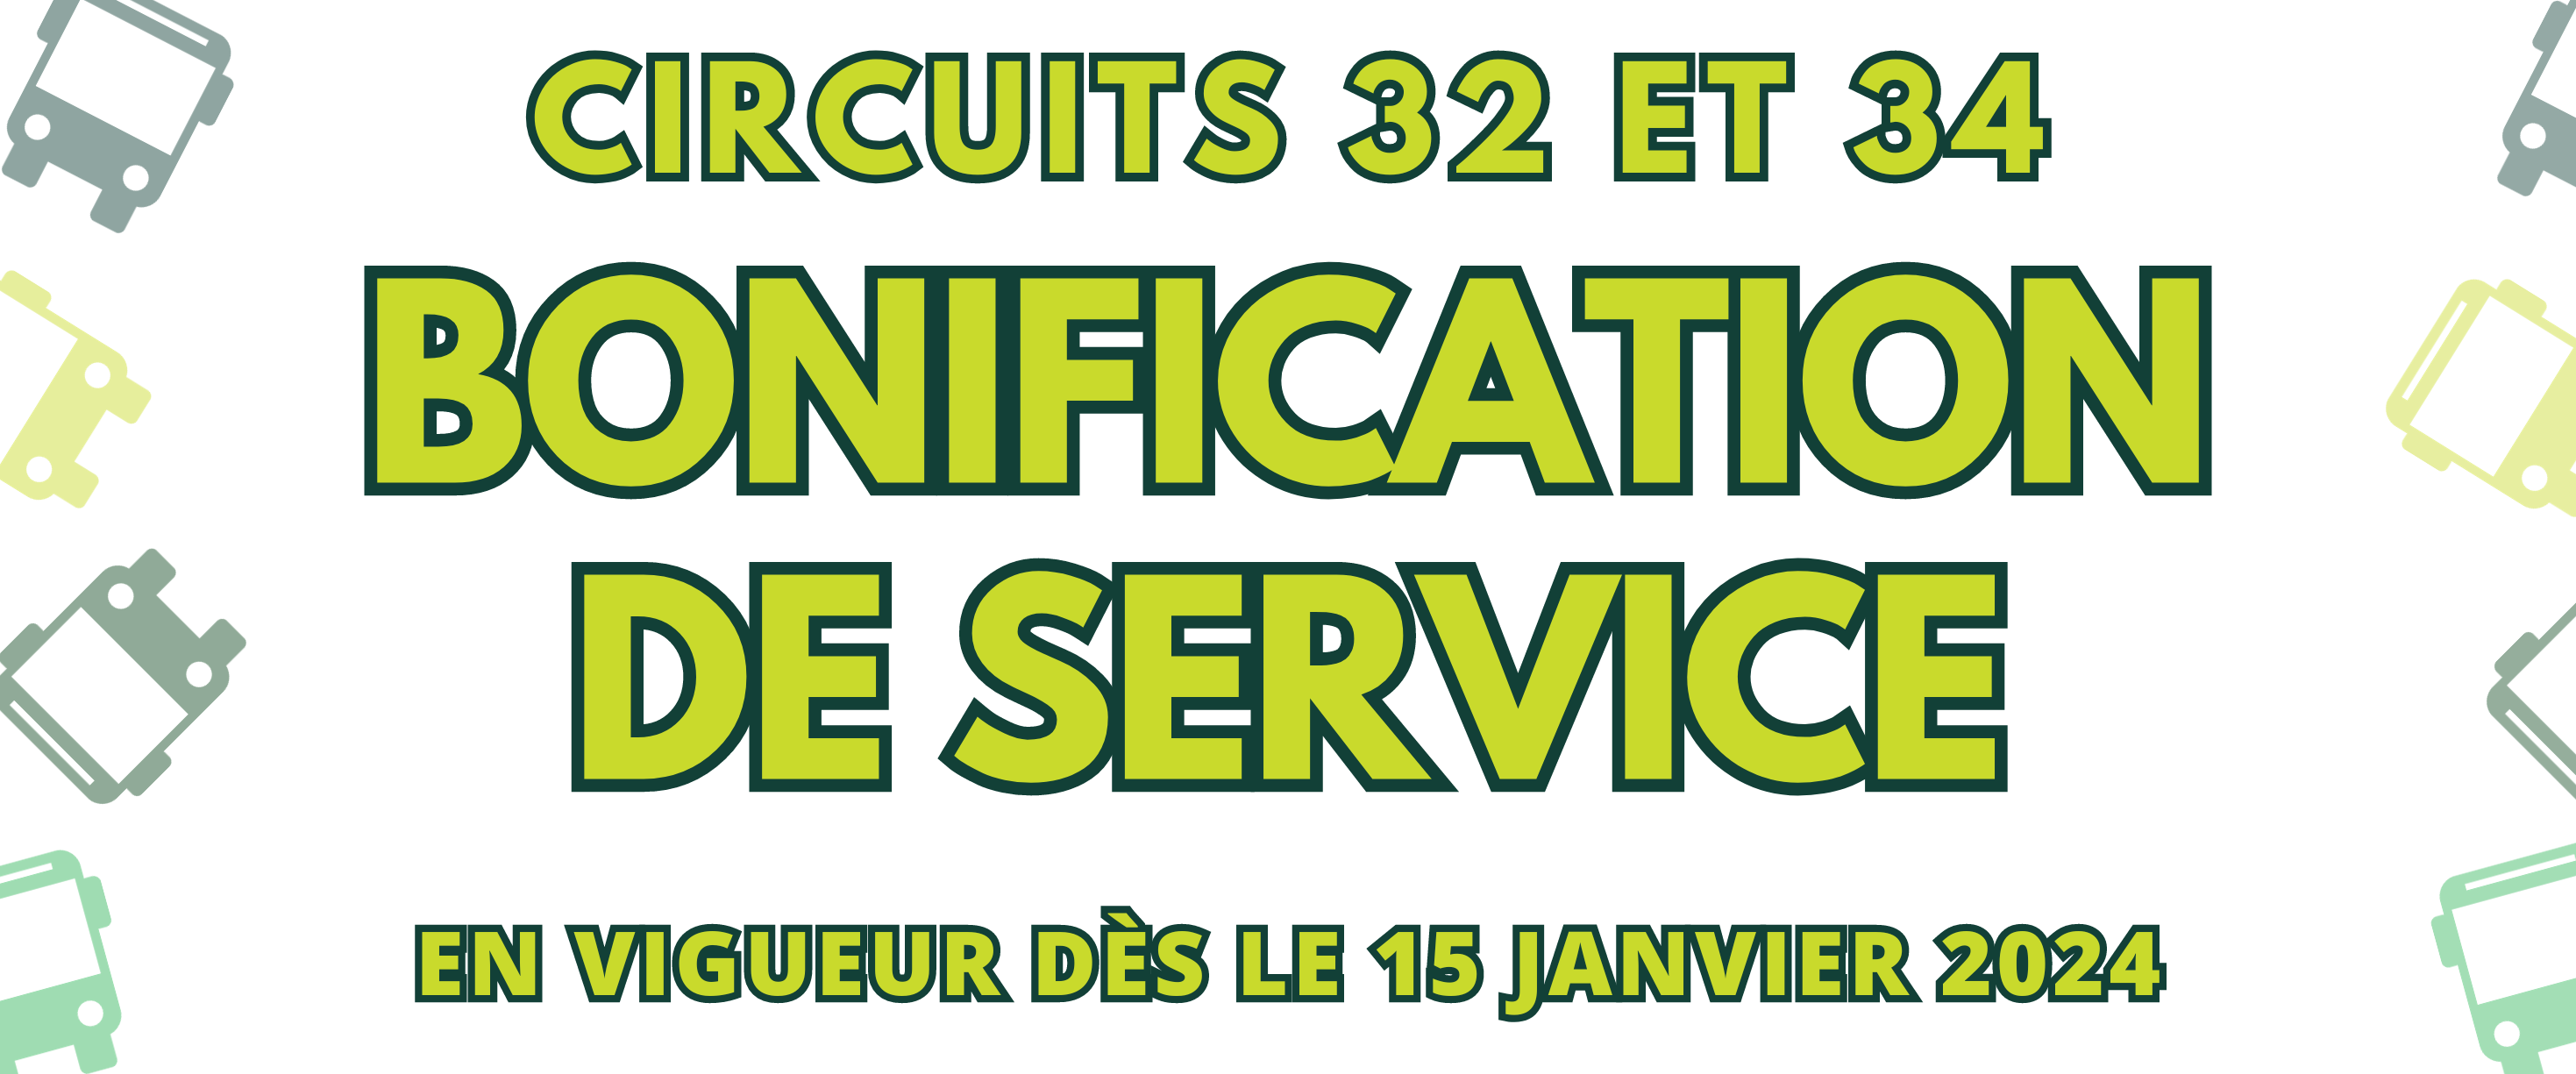 BONIFICATION DE SERVICE | CIRCUITS 32 ET 34